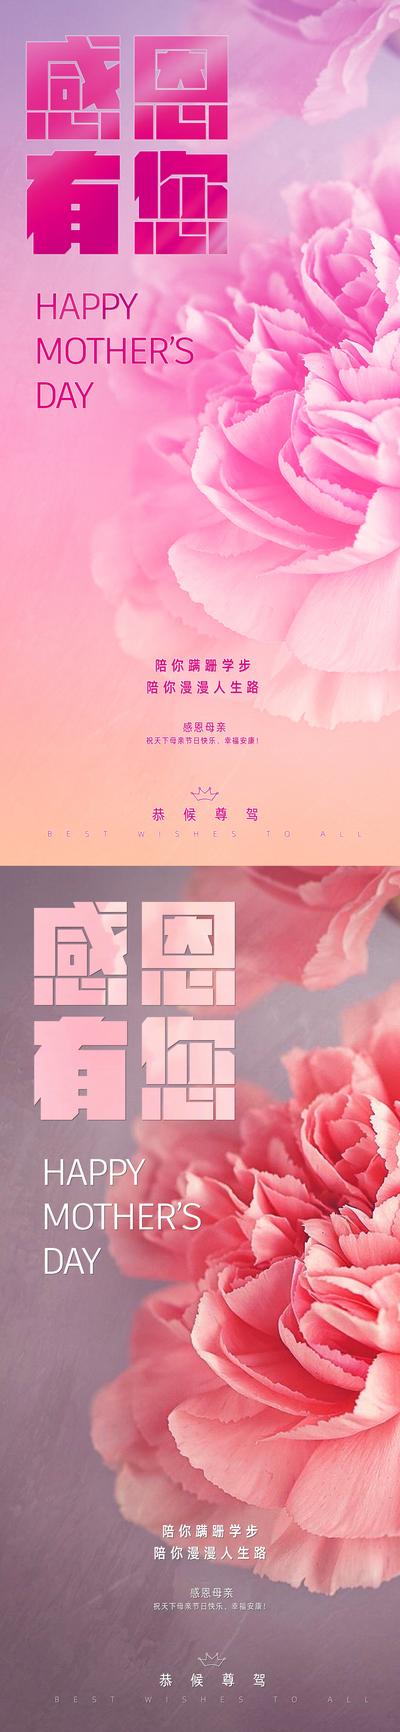 南门网 海报 公历节日   母亲节 感恩 康乃馨  系列